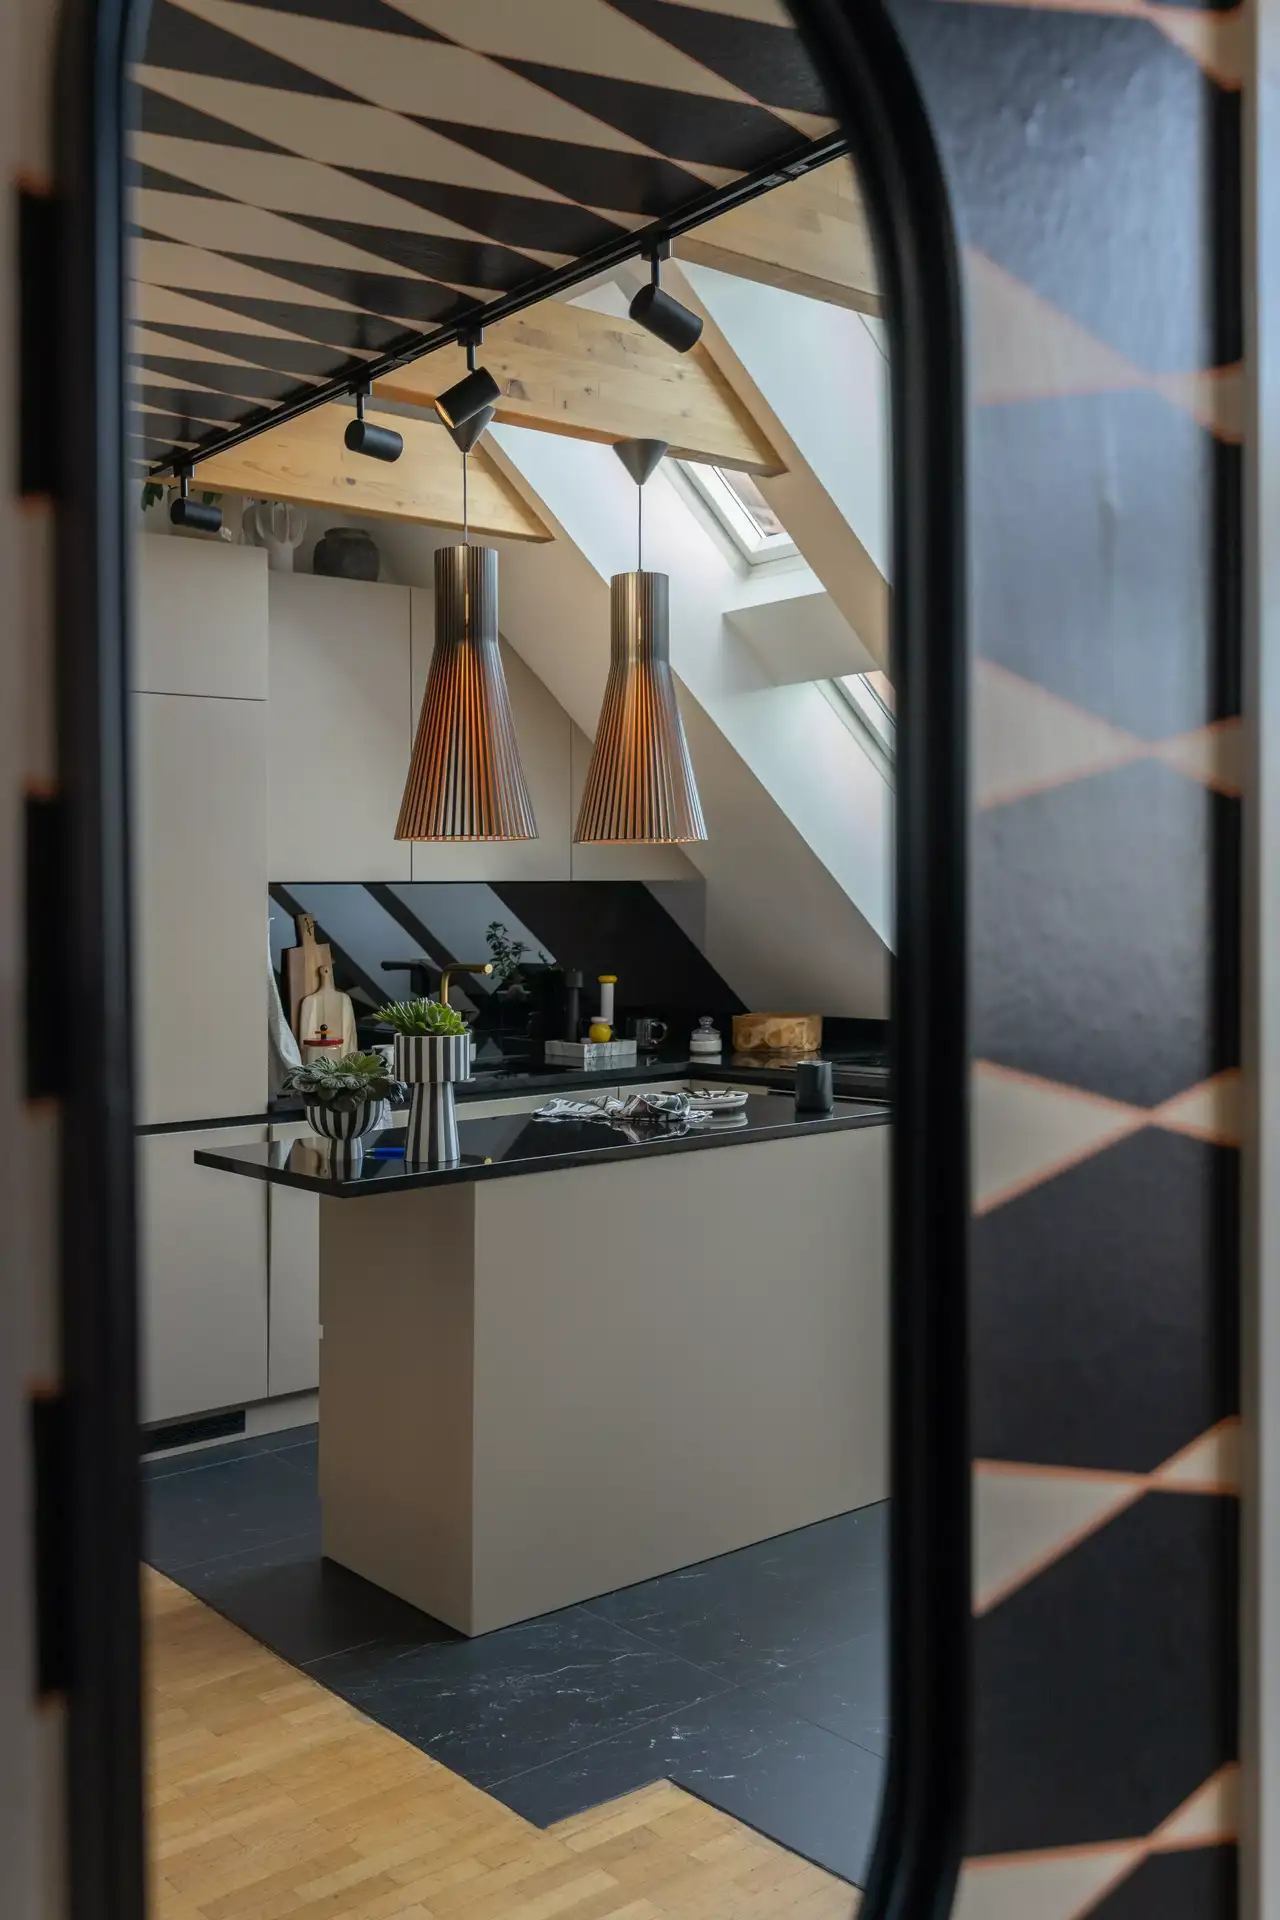 Moderne Küche mit zentraler Insel, beleuchtet durch VELUX Fenster, kontrastreiche Töne und Hängebeleuchtung.